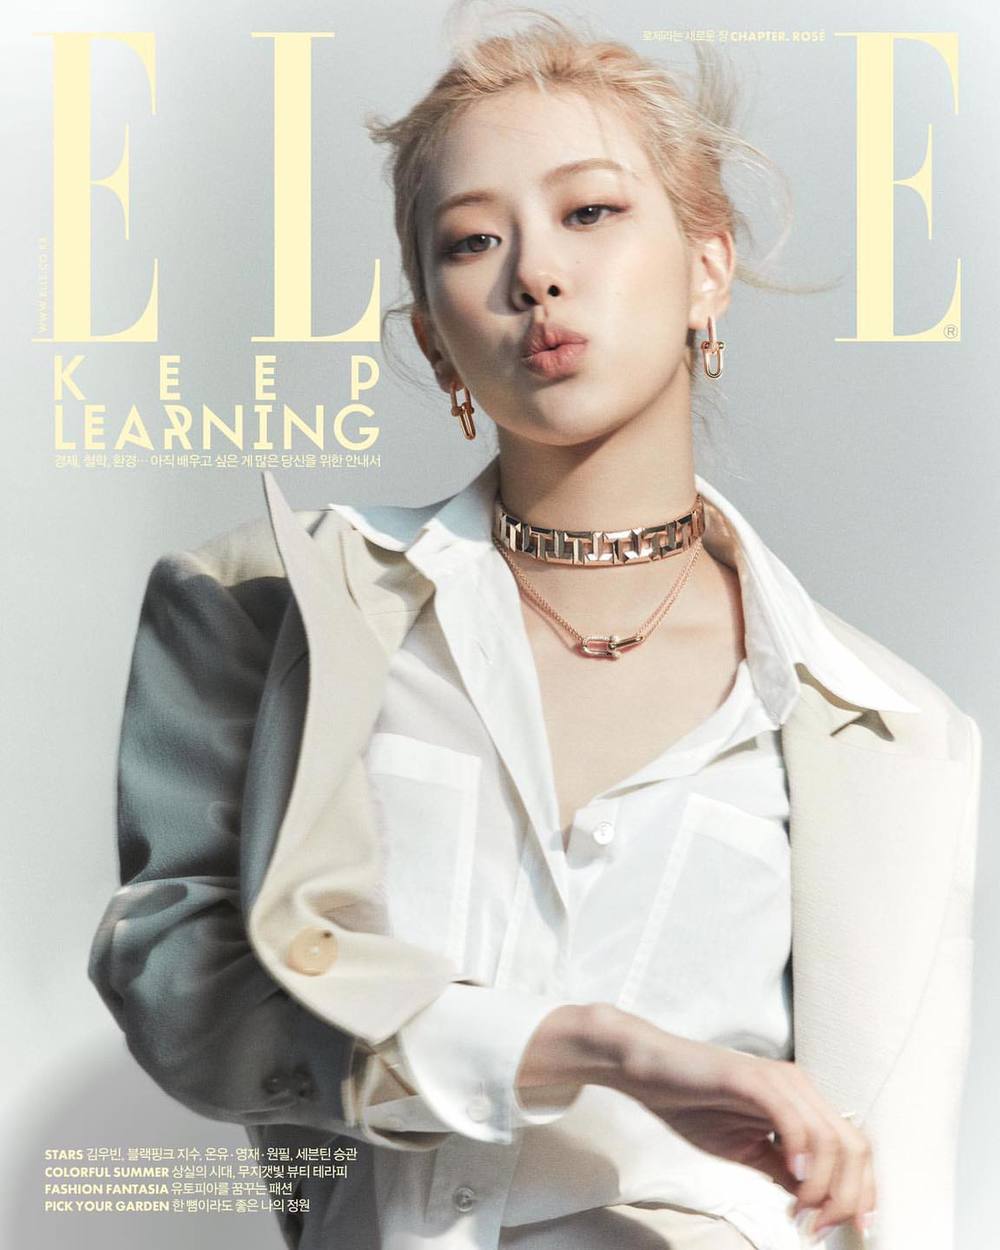 Rosé, Elle Hàn Quốc: Rosé - cô nàng tài năng đa năng của nhóm nhạc BLACKPINK - sẽ xuất hiện trên trang bìa tạp chí Elle Hàn Quốc. Hãy đến với hình ảnh liên quan để cùng chiêm ngưỡng vẻ đẹp và tài năng của cô nàng Rosé.